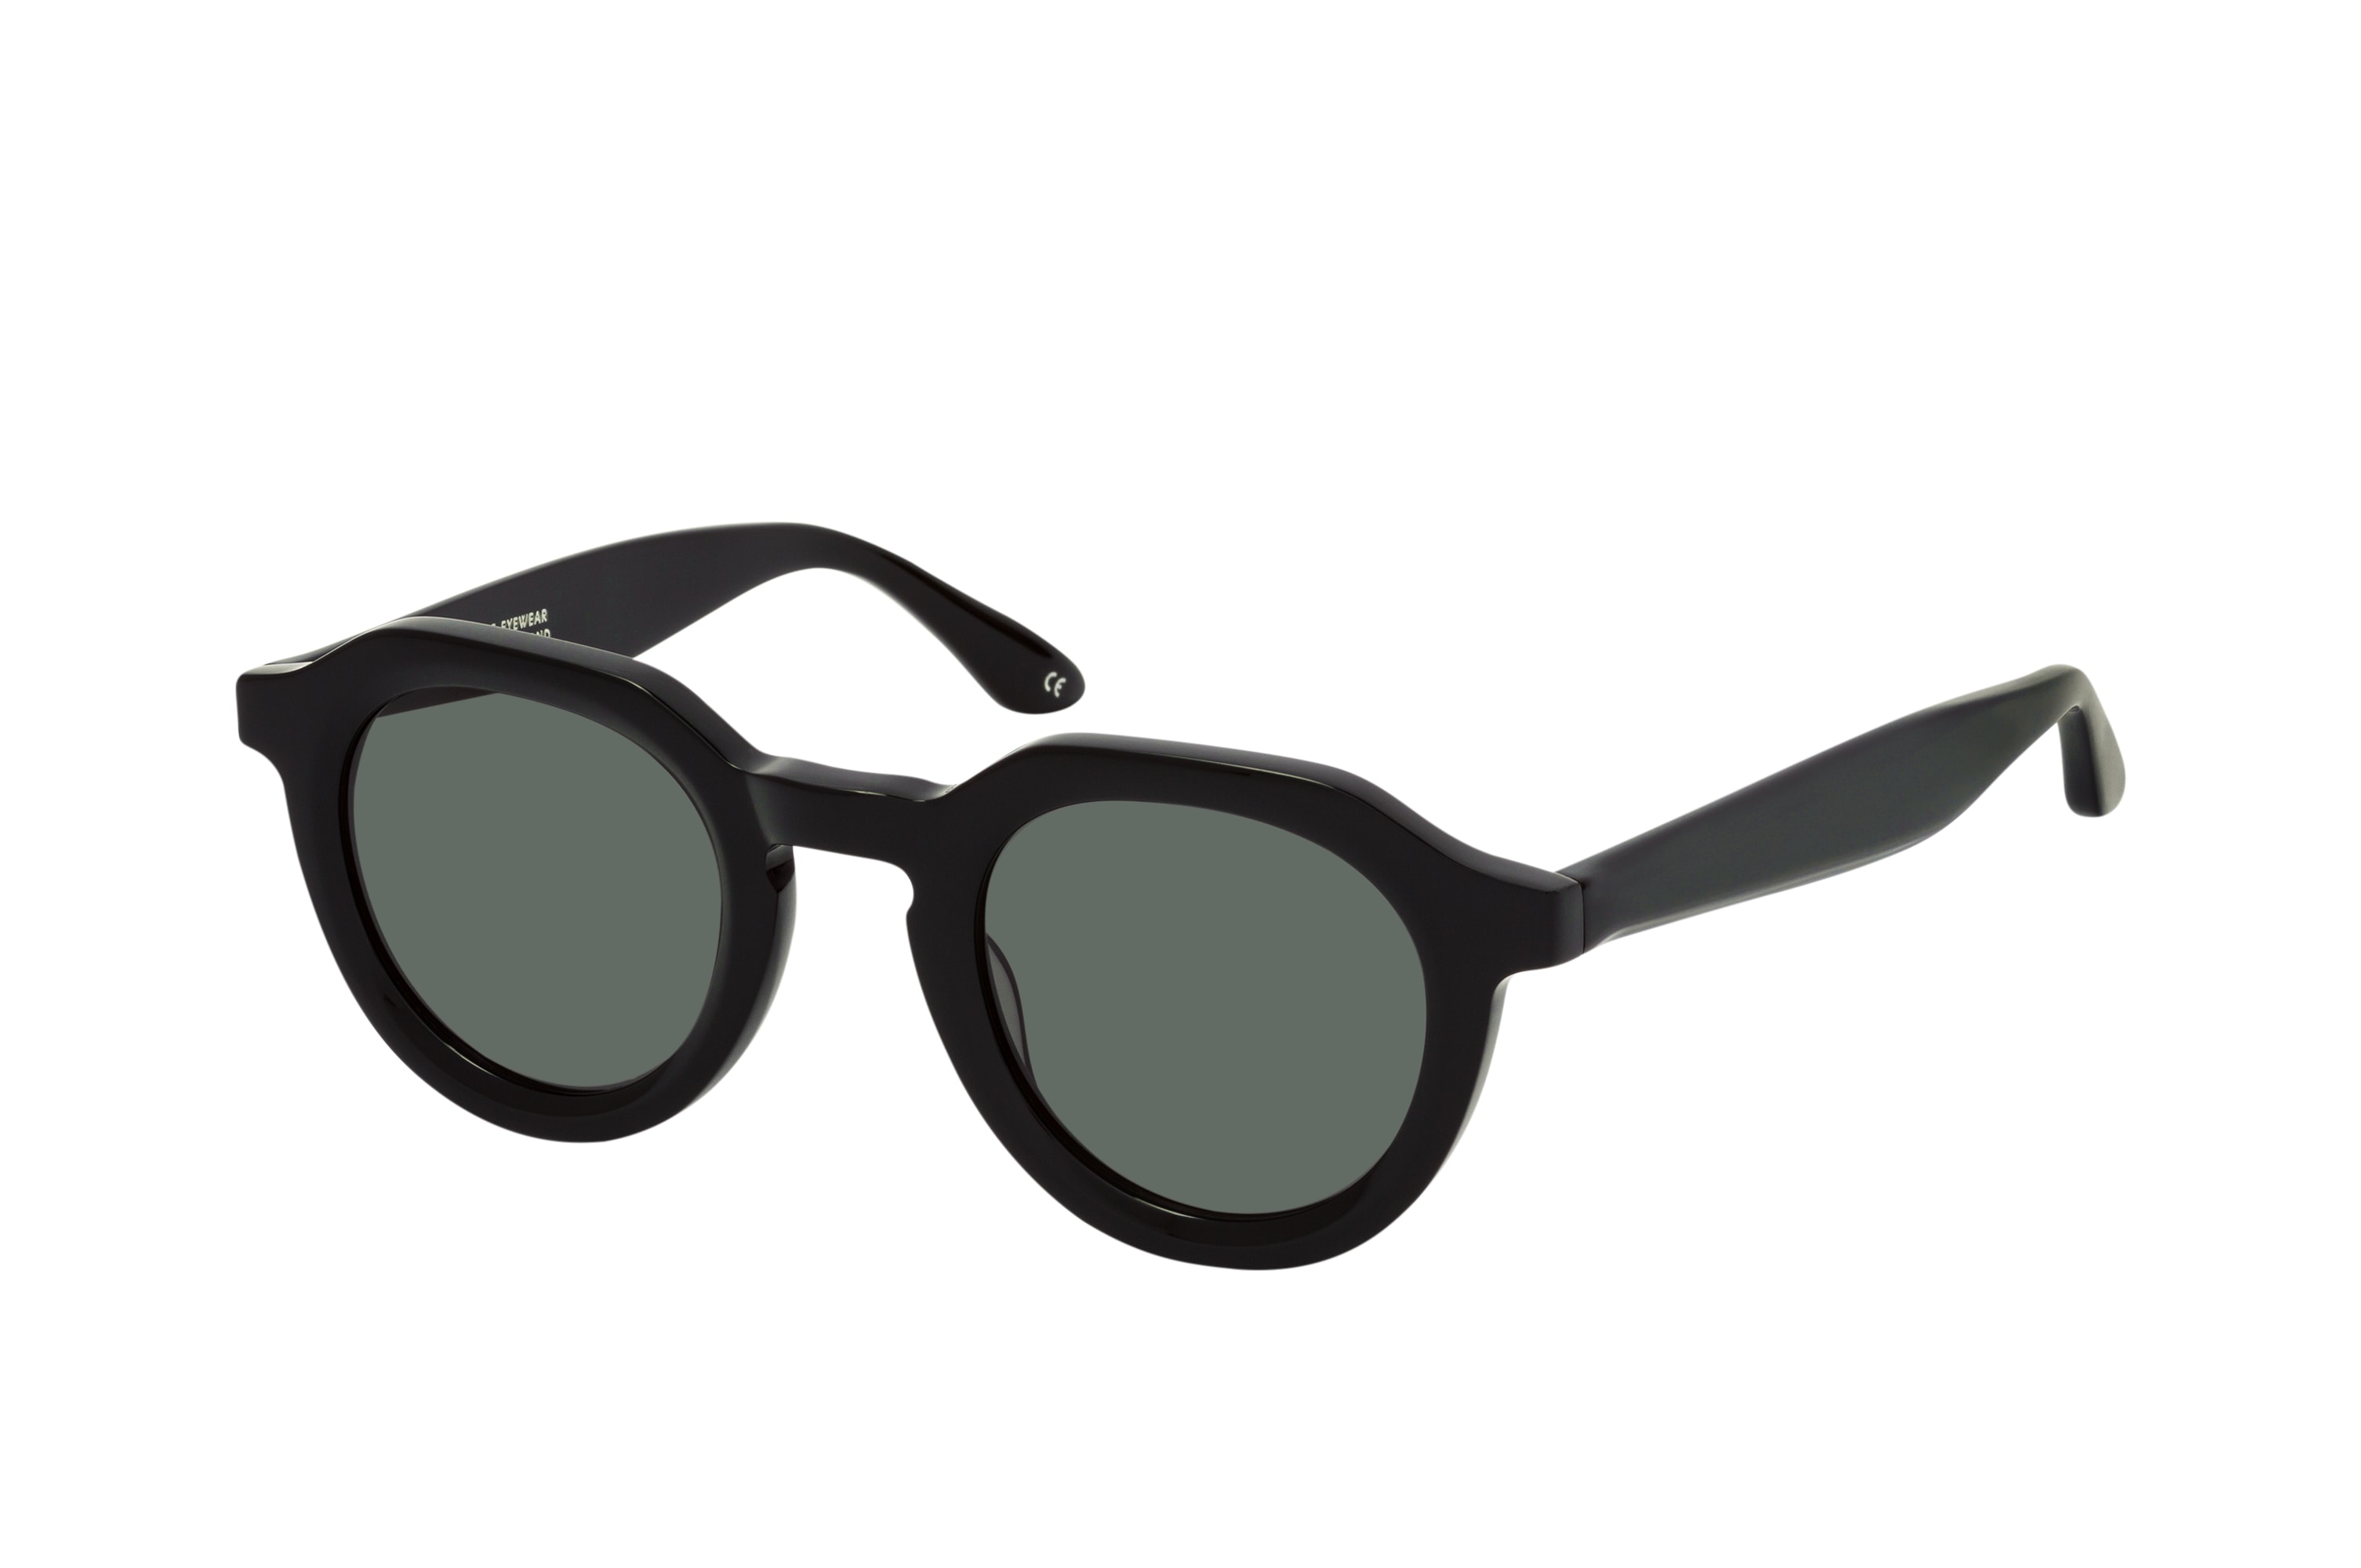 Schwarze Retro-Sonnenbrille, Sonnenbrillen, Sacha